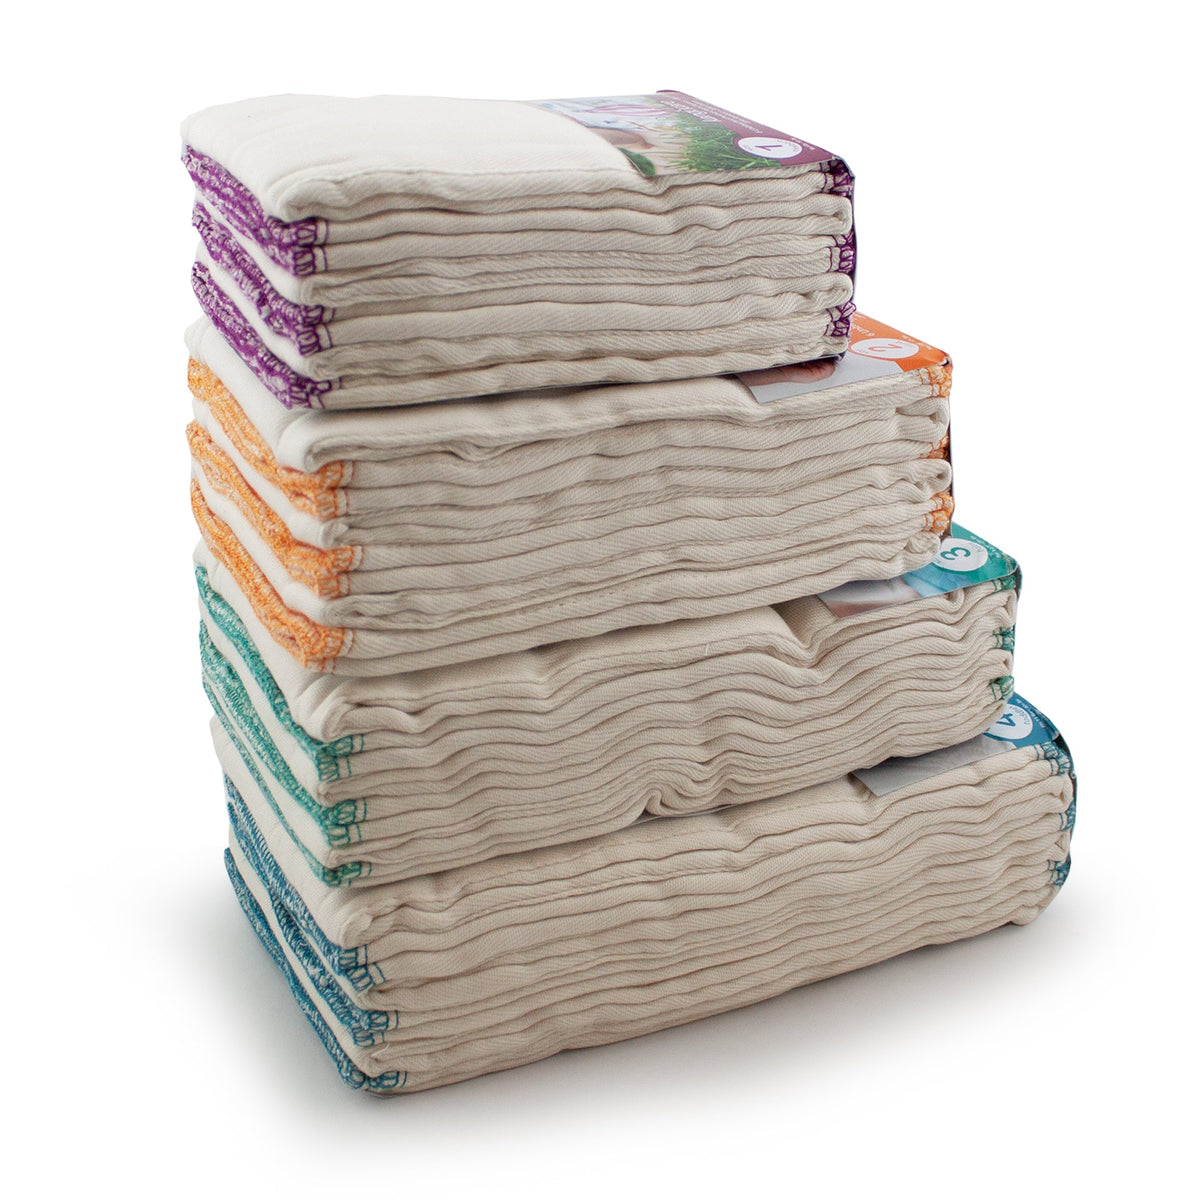 Kanga Care Bamboo Prefold Cloth Diapers (6pk) - Size 4 : Toddler